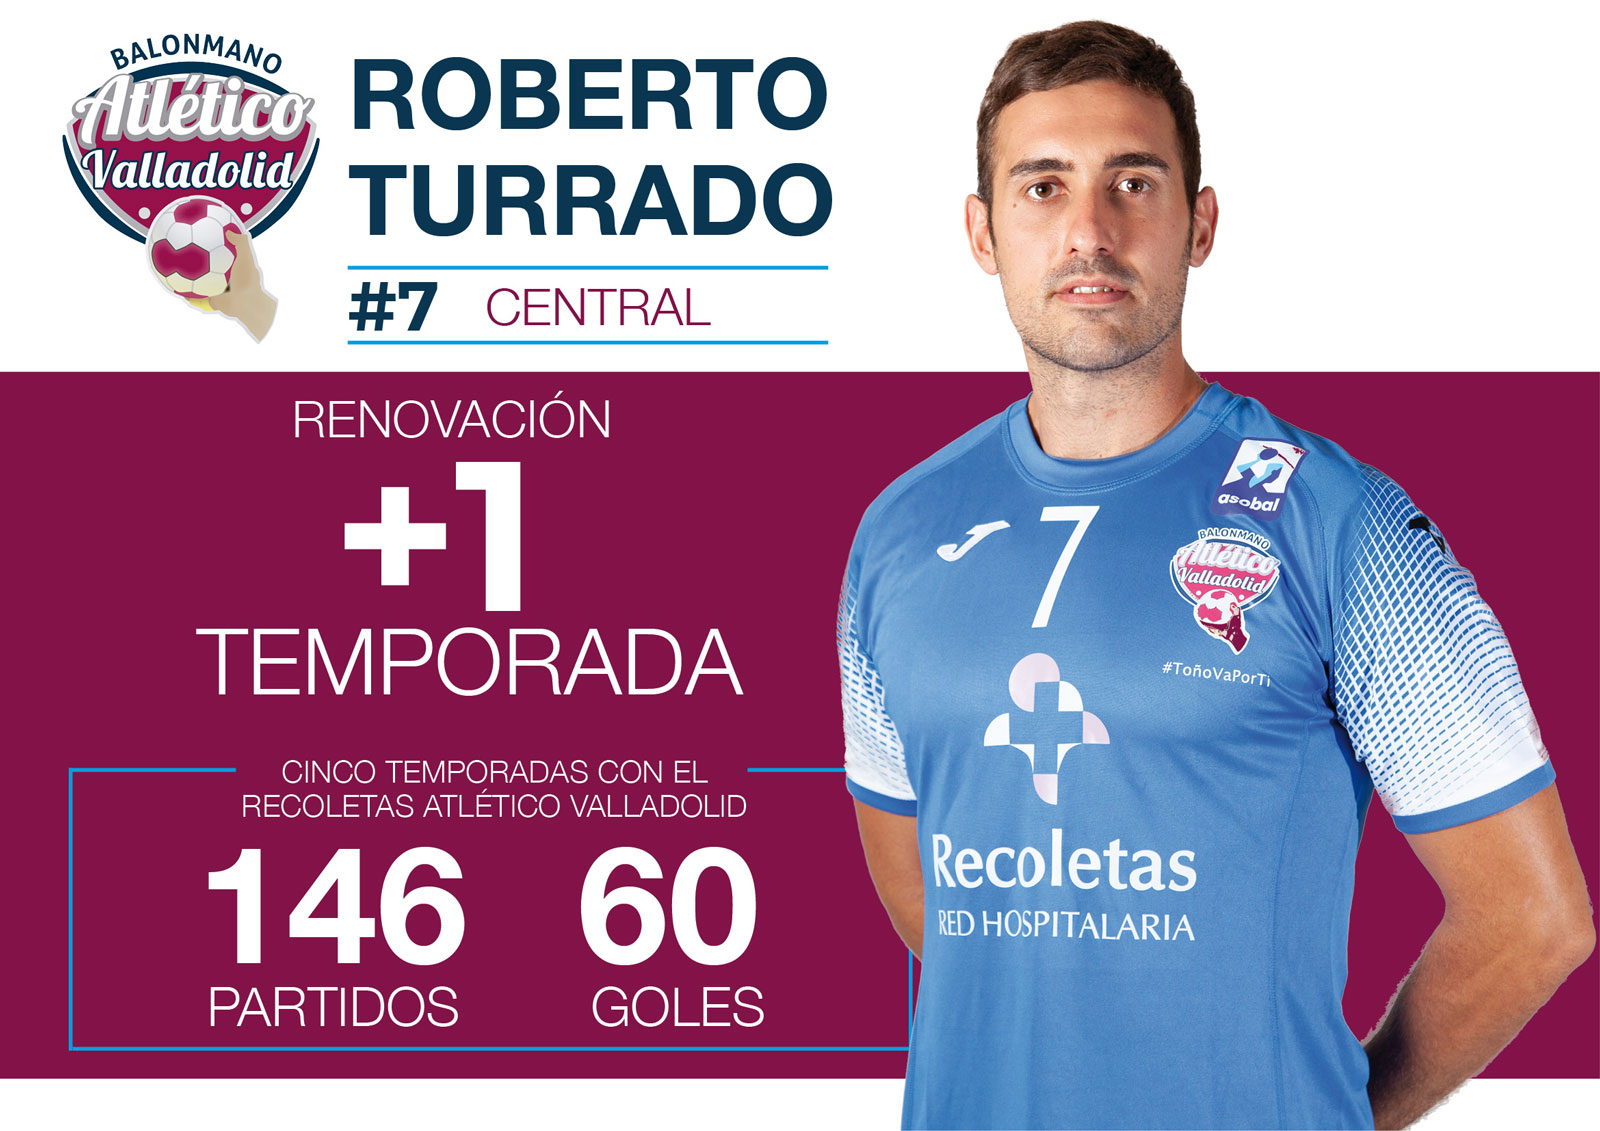 Roberto Turrado renueva su compromiso con el Recoletas Atlético Valladolid por una temporada más